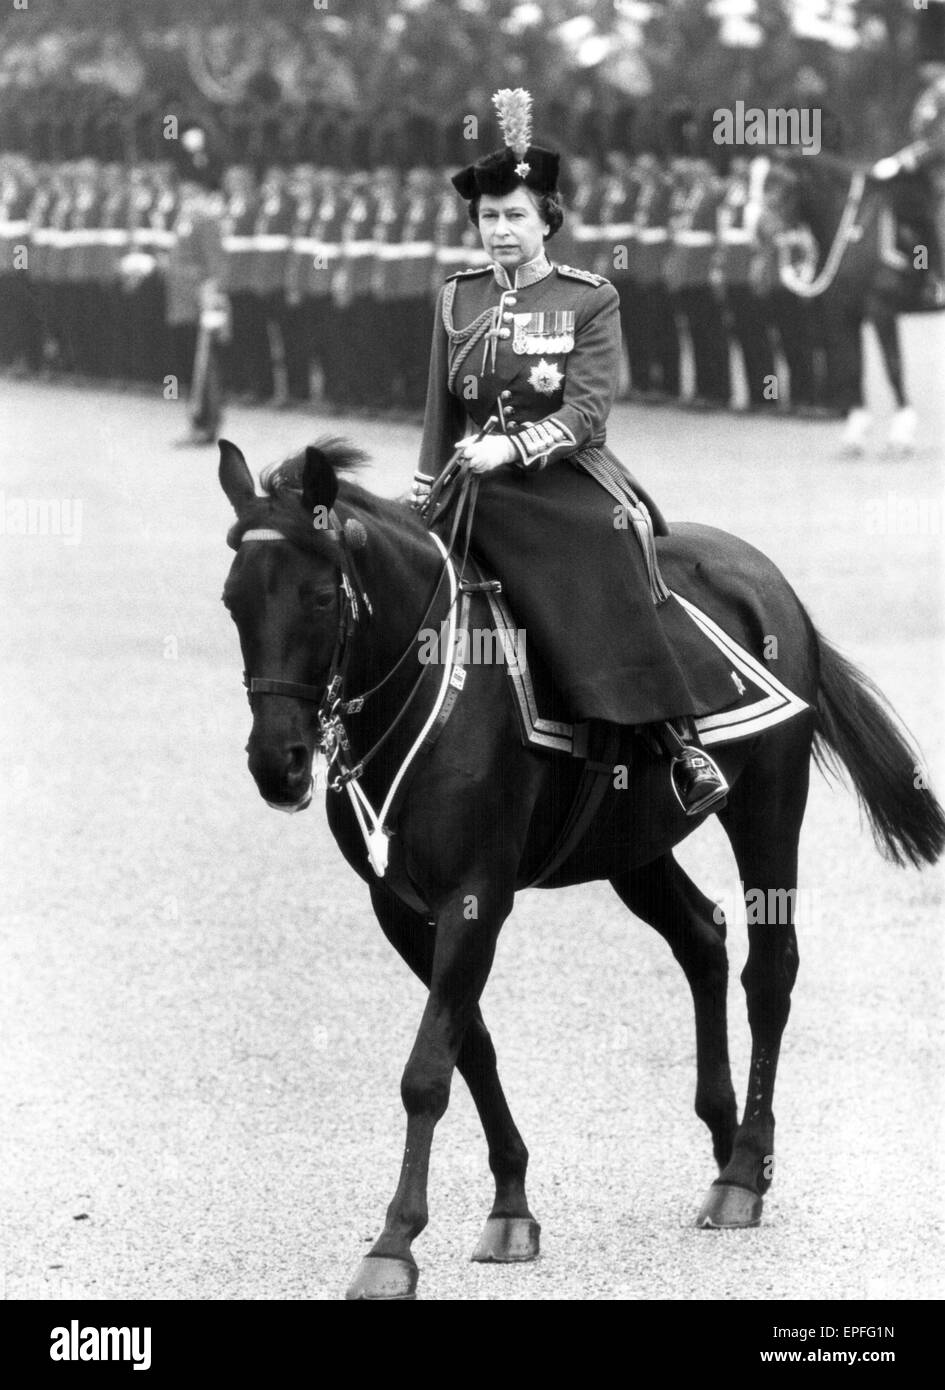 La Reine prend part à la parade de la cérémonie des couleurs avec 1er bataillon Irish Guards, Horse Guards Parade,, Londres, samedi 14 juin 1980. Banque D'Images